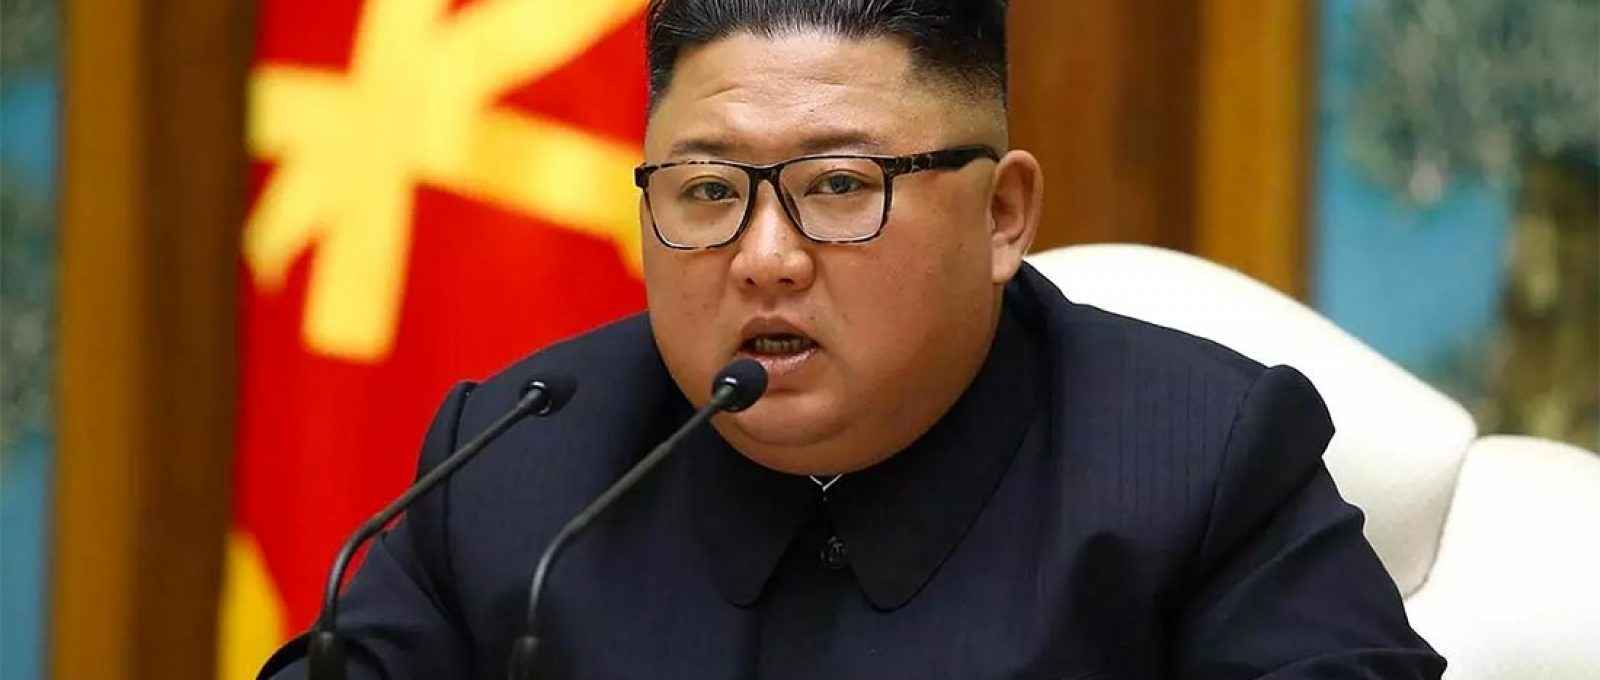 O líder norte-coreano Kim Jong Un (Foto: STR/KCNA/AFP).